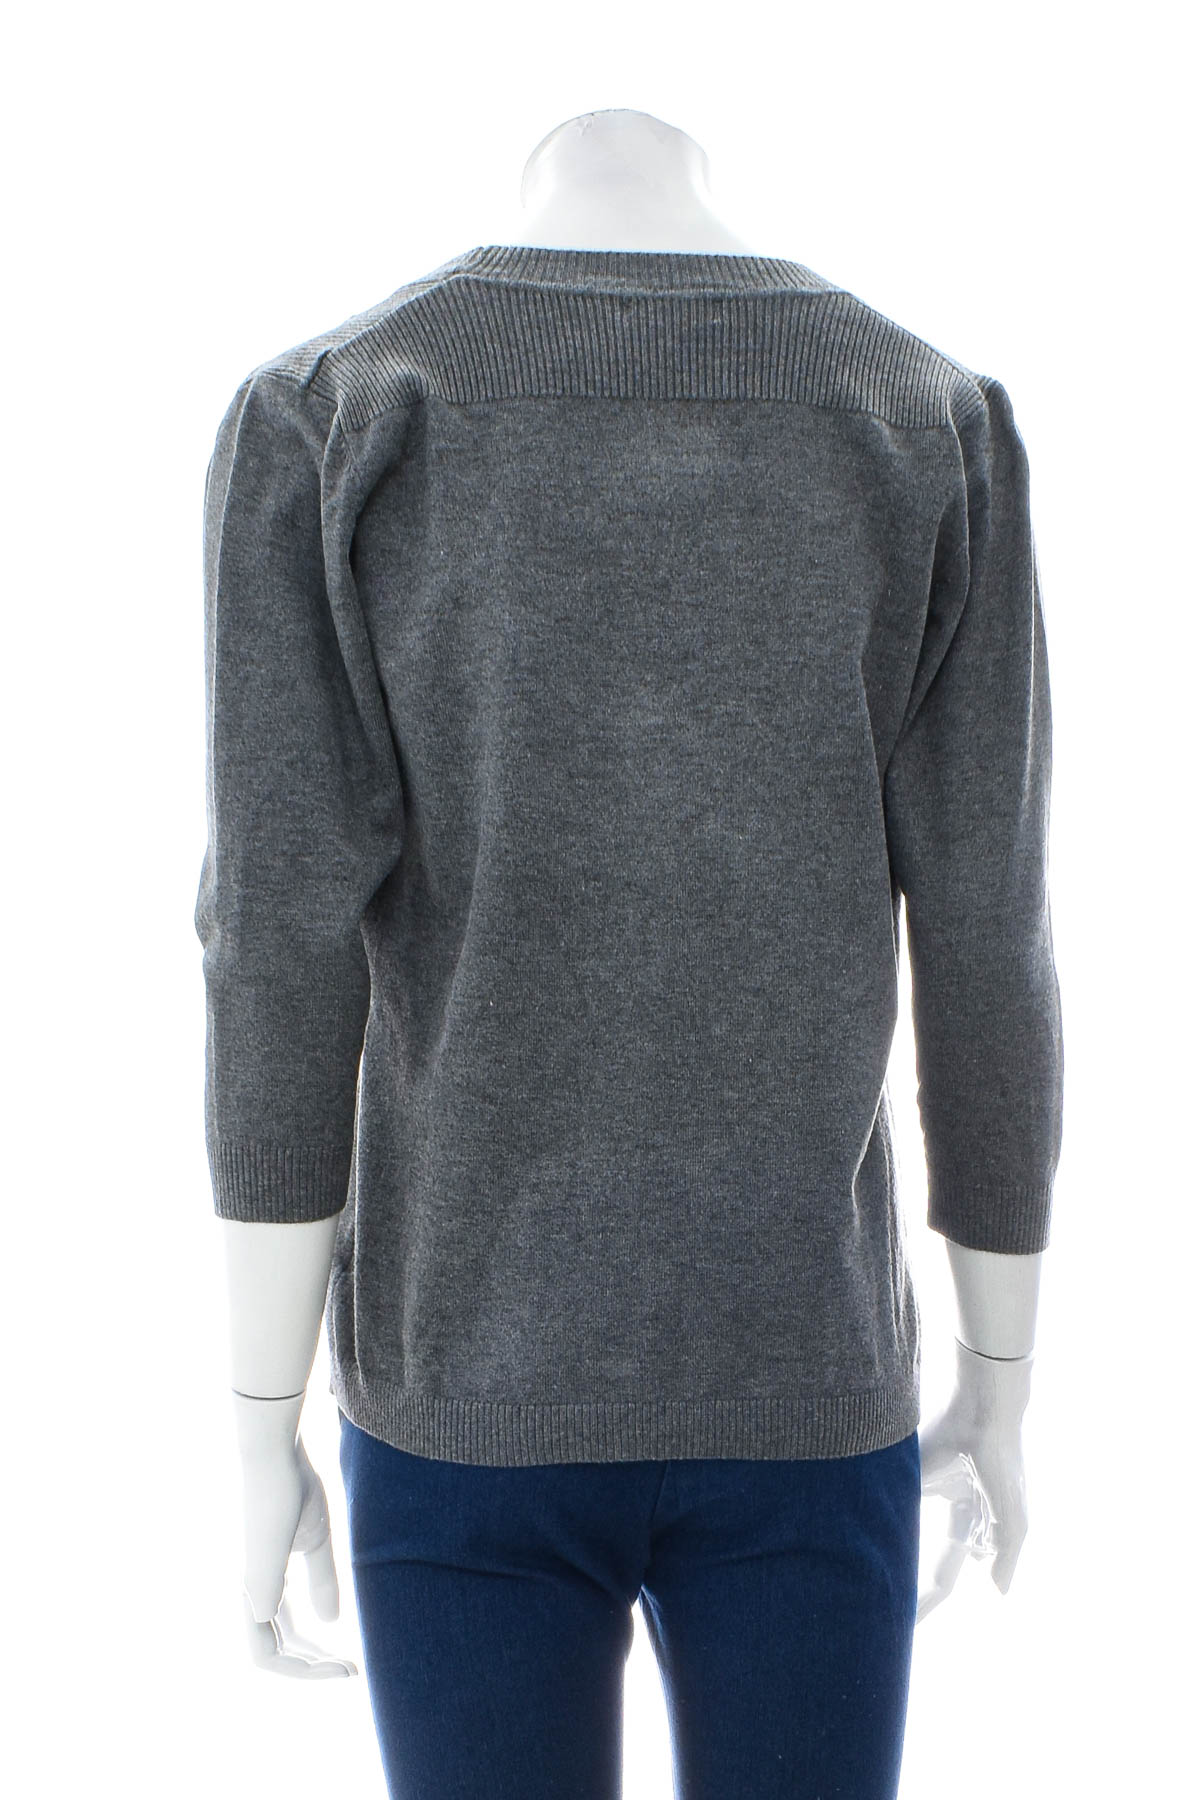 Women's sweater - LONG ISLAND - 1